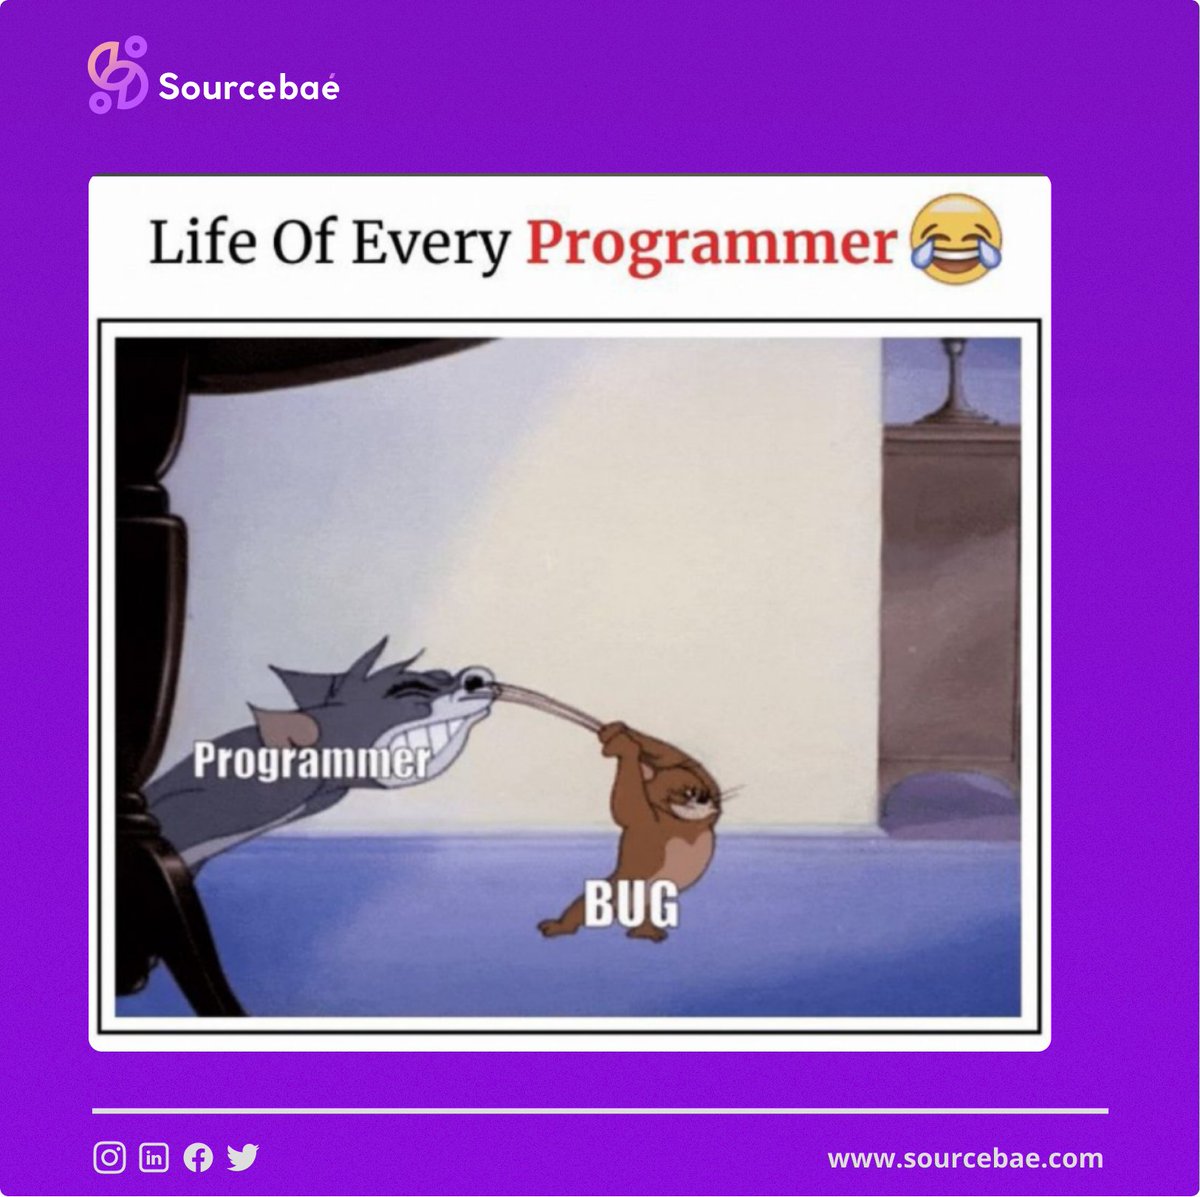 Life of a Programmer 🤣👨🏻‍💻
.
.
.
#developer #programming #coding #programmer #javascript #code #coder #webdeveloper #software #relateablememes  #memes #softwaredeveloper #development #codinglife #tech #developers #php #developerlife #web #meme #programminglife #sourcebae